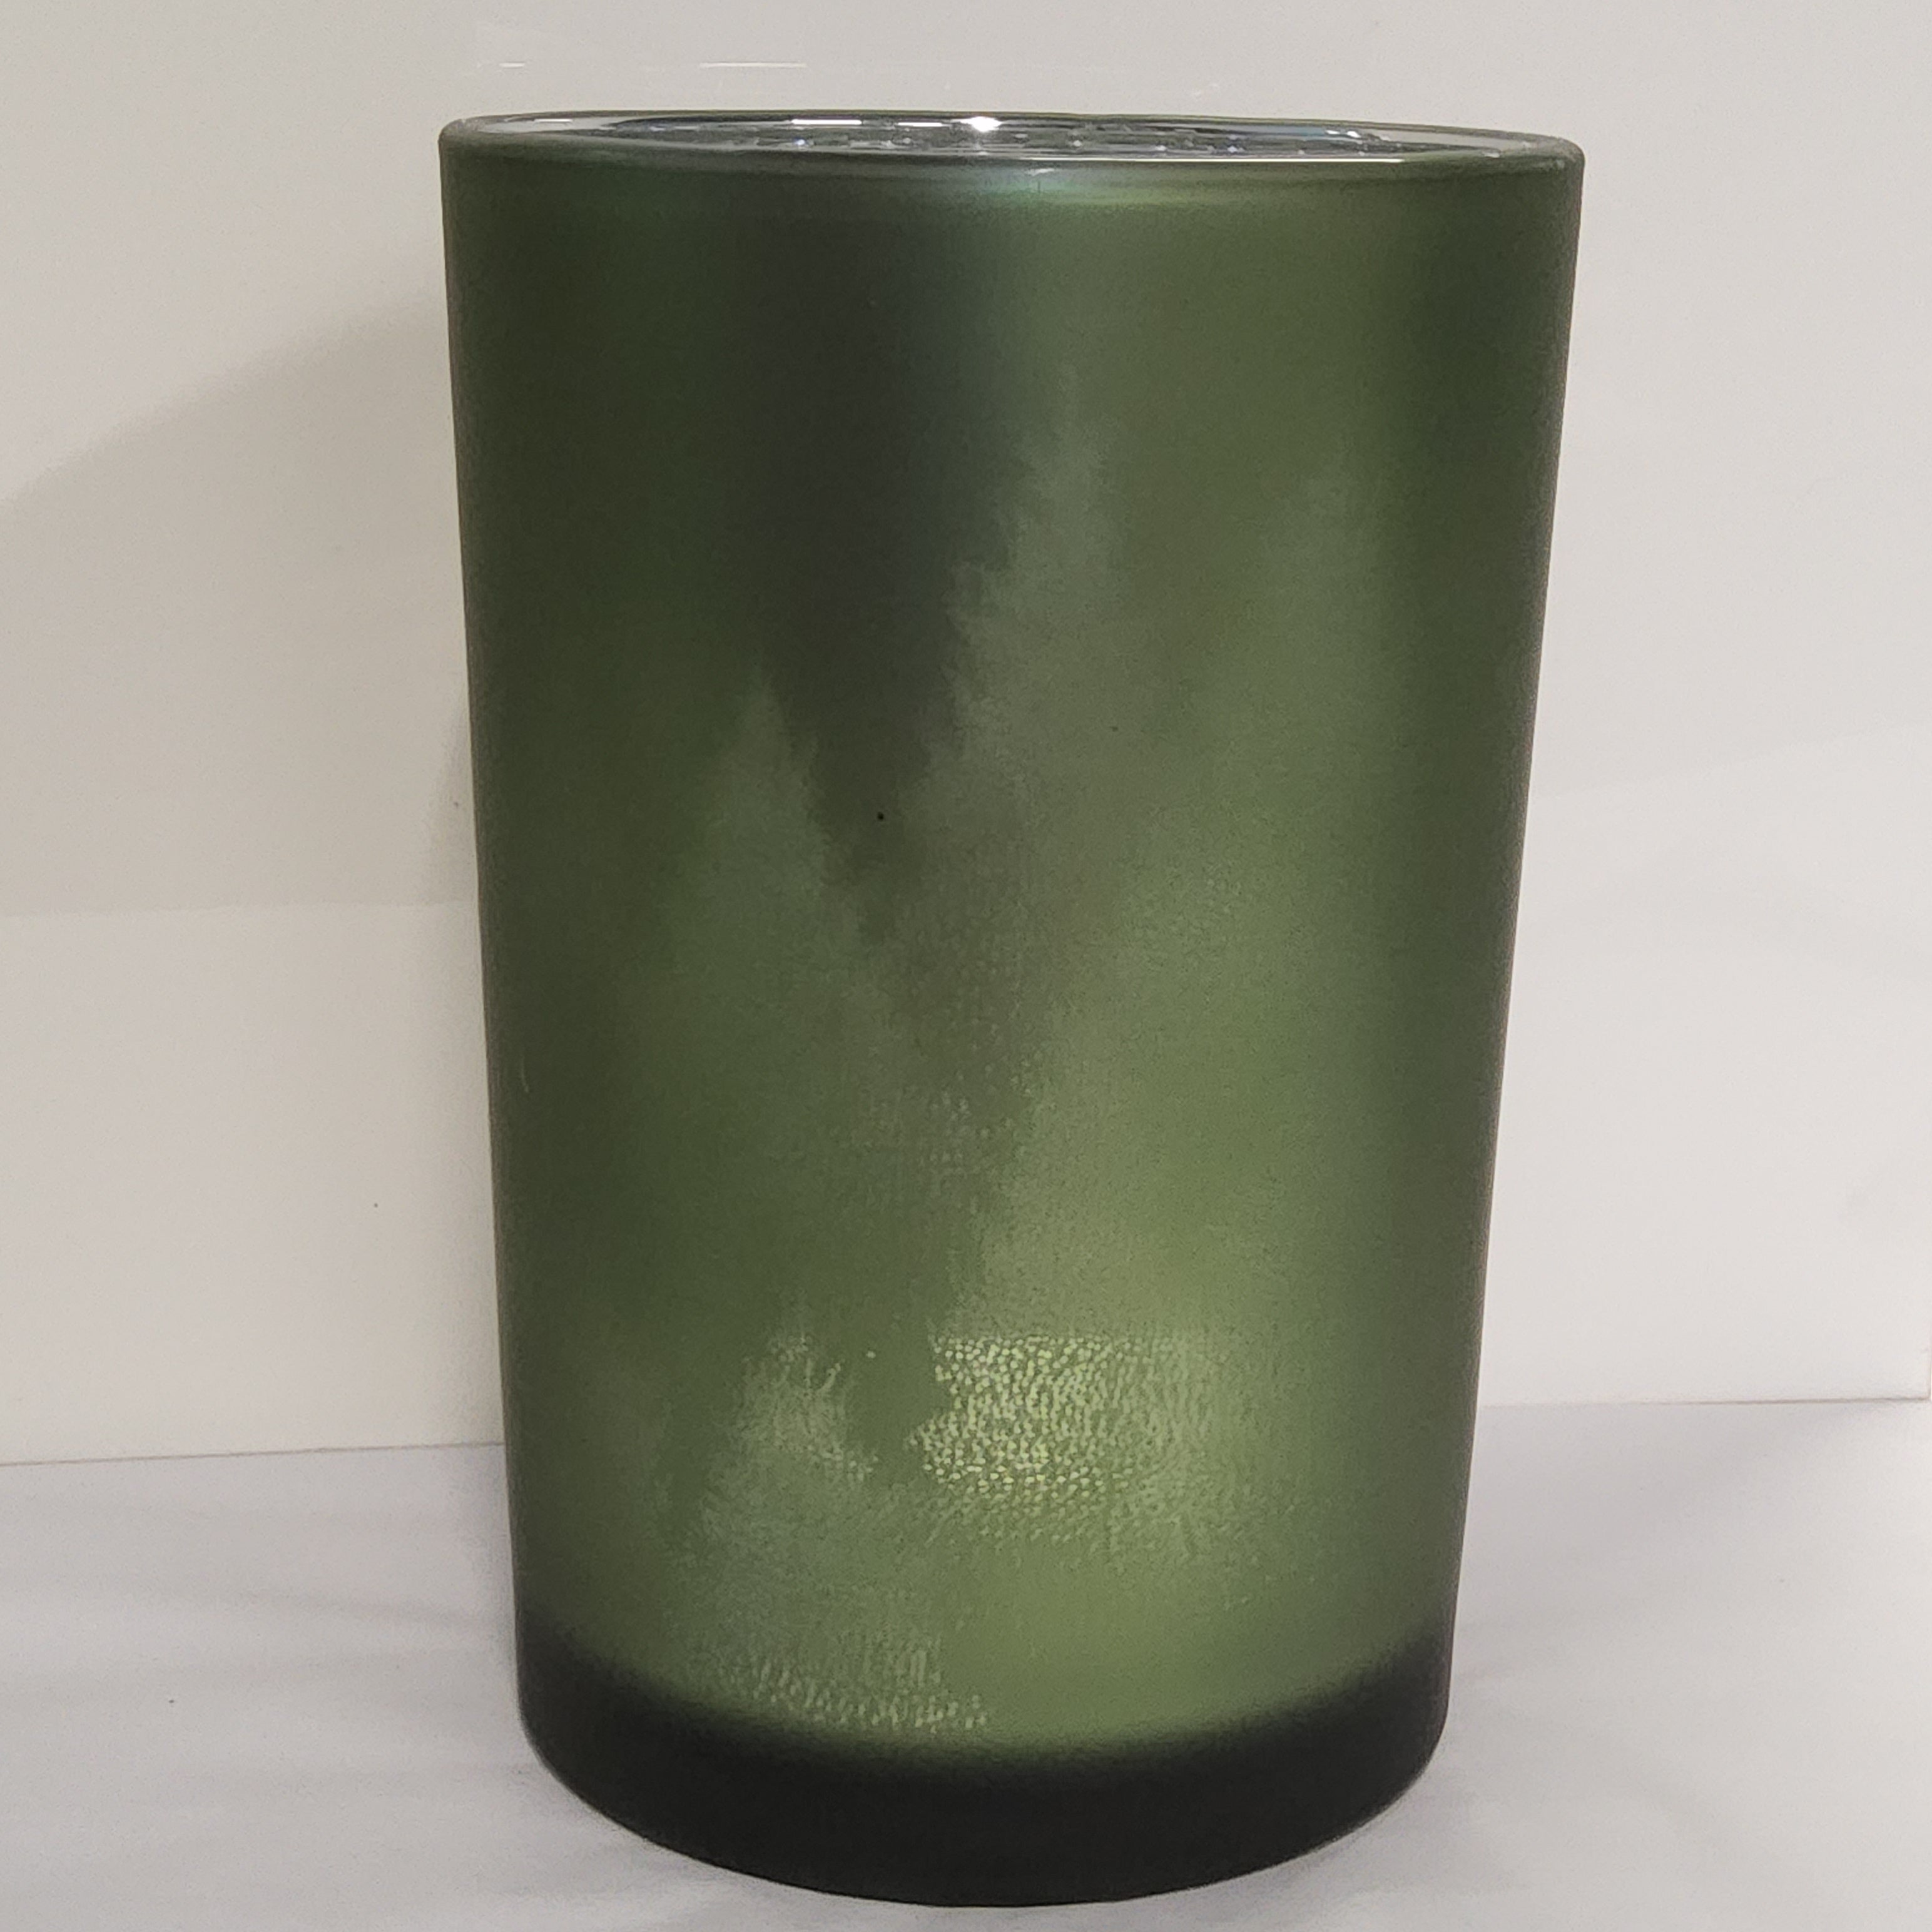 Glass Hurricane Vase - Evergreen Forest - 4.5x7"